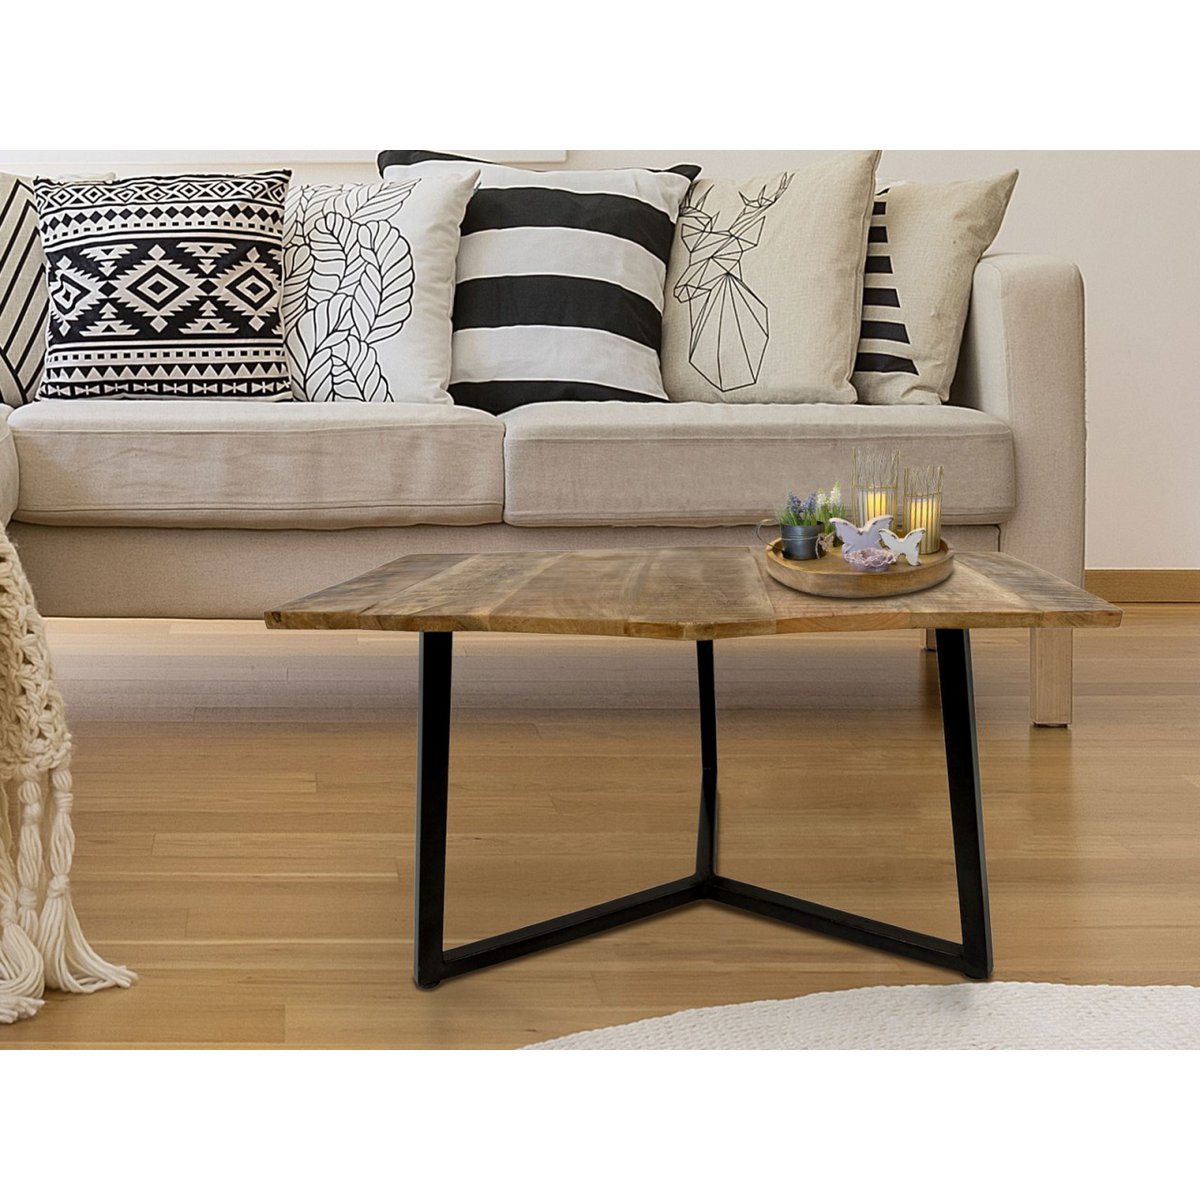 Beistelltisch 56 x 47 cm nachhaltig Wohnzimmer Tisch Couchtisch Nizza Metall-Gestell schwarz - weiß variant: reinweiß - tabacco,color: white